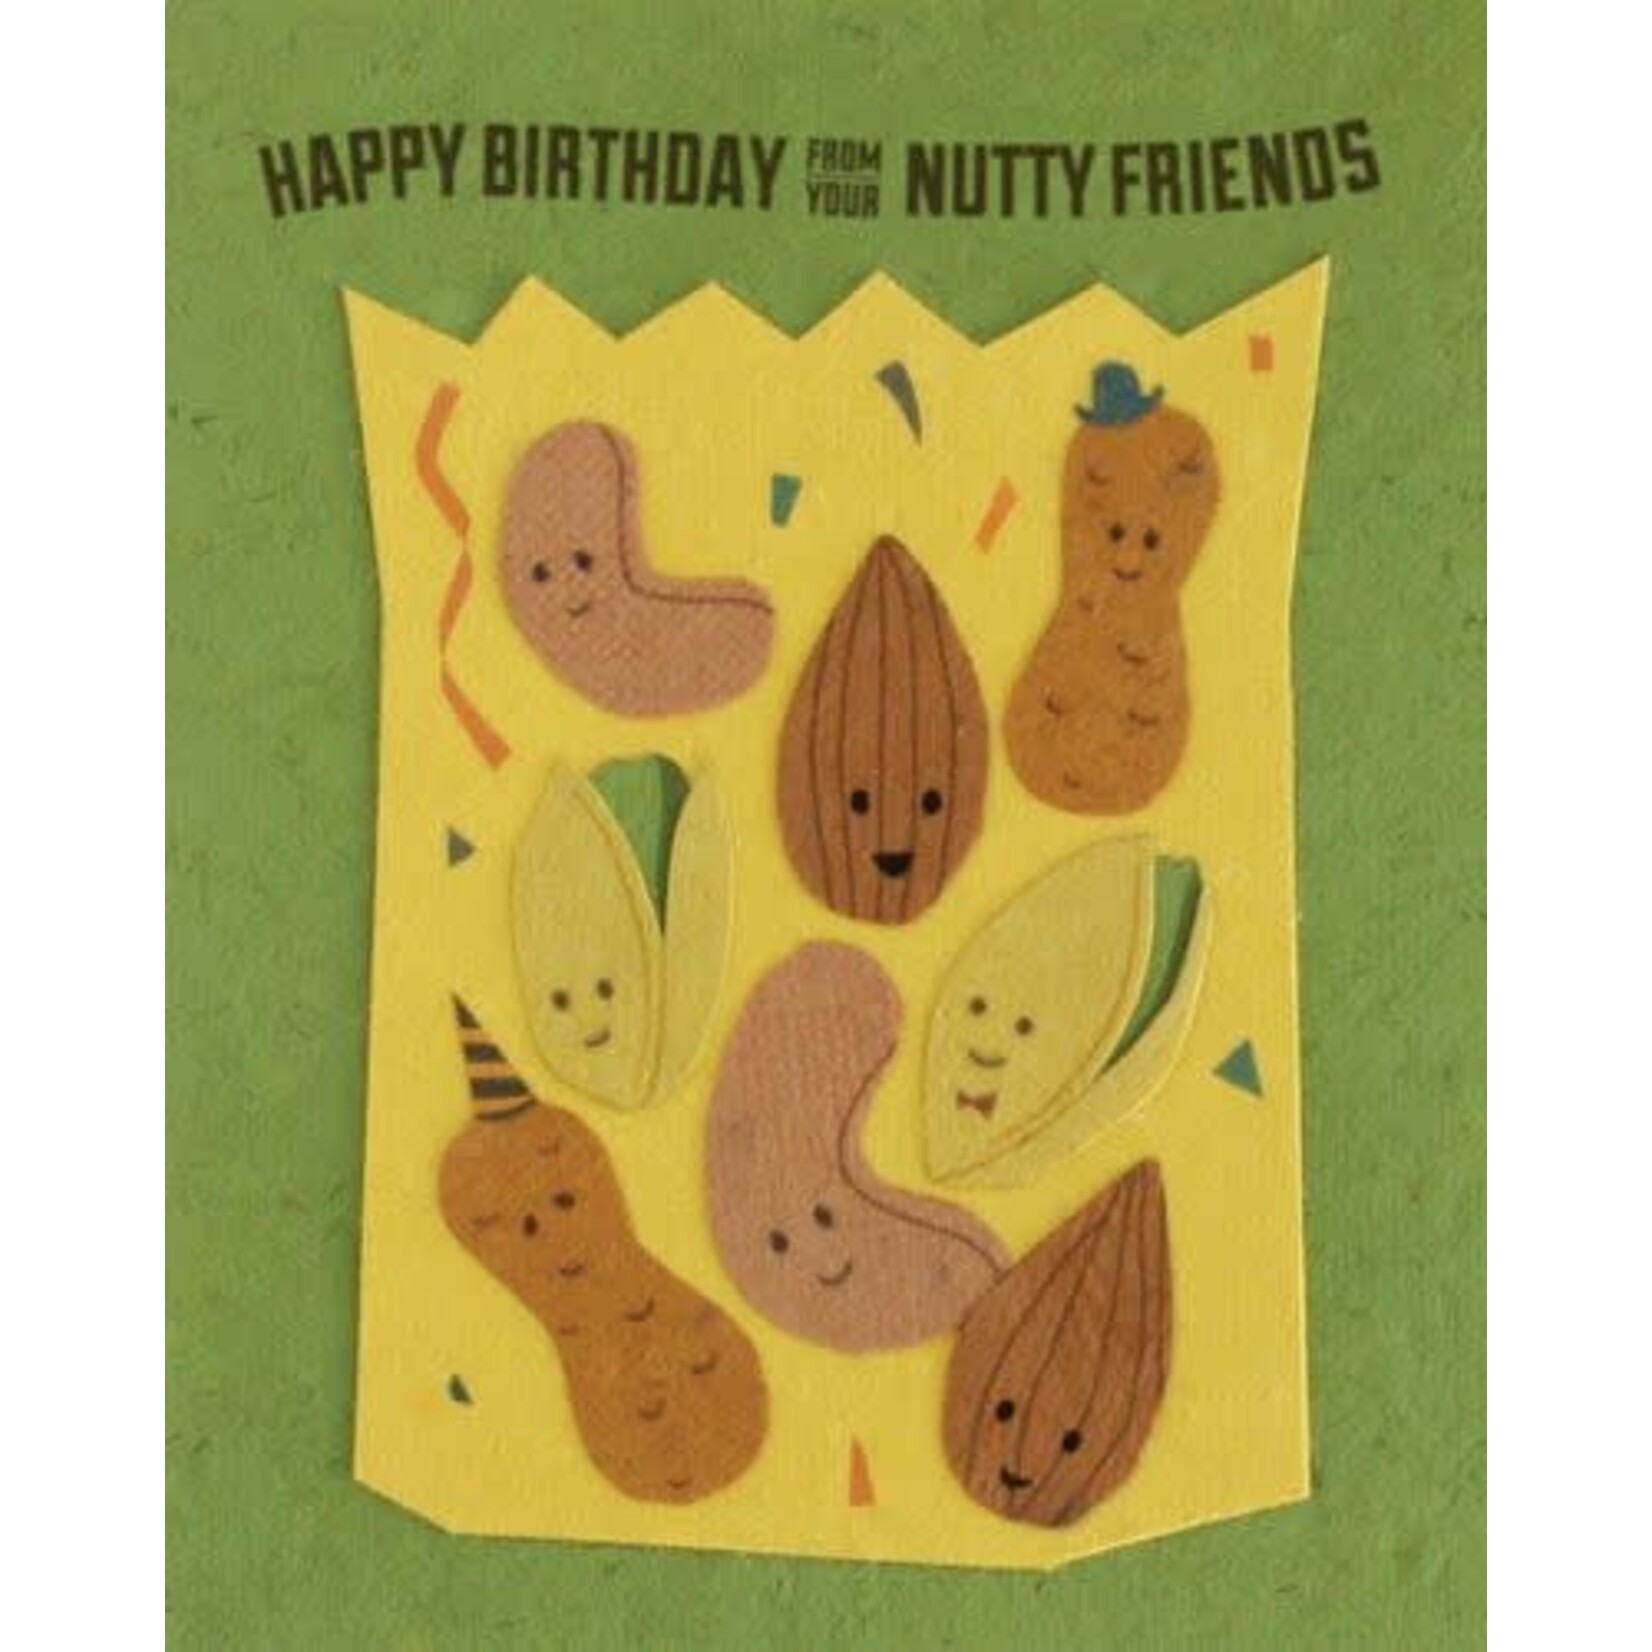 Philippines Nutty Friends Birthday